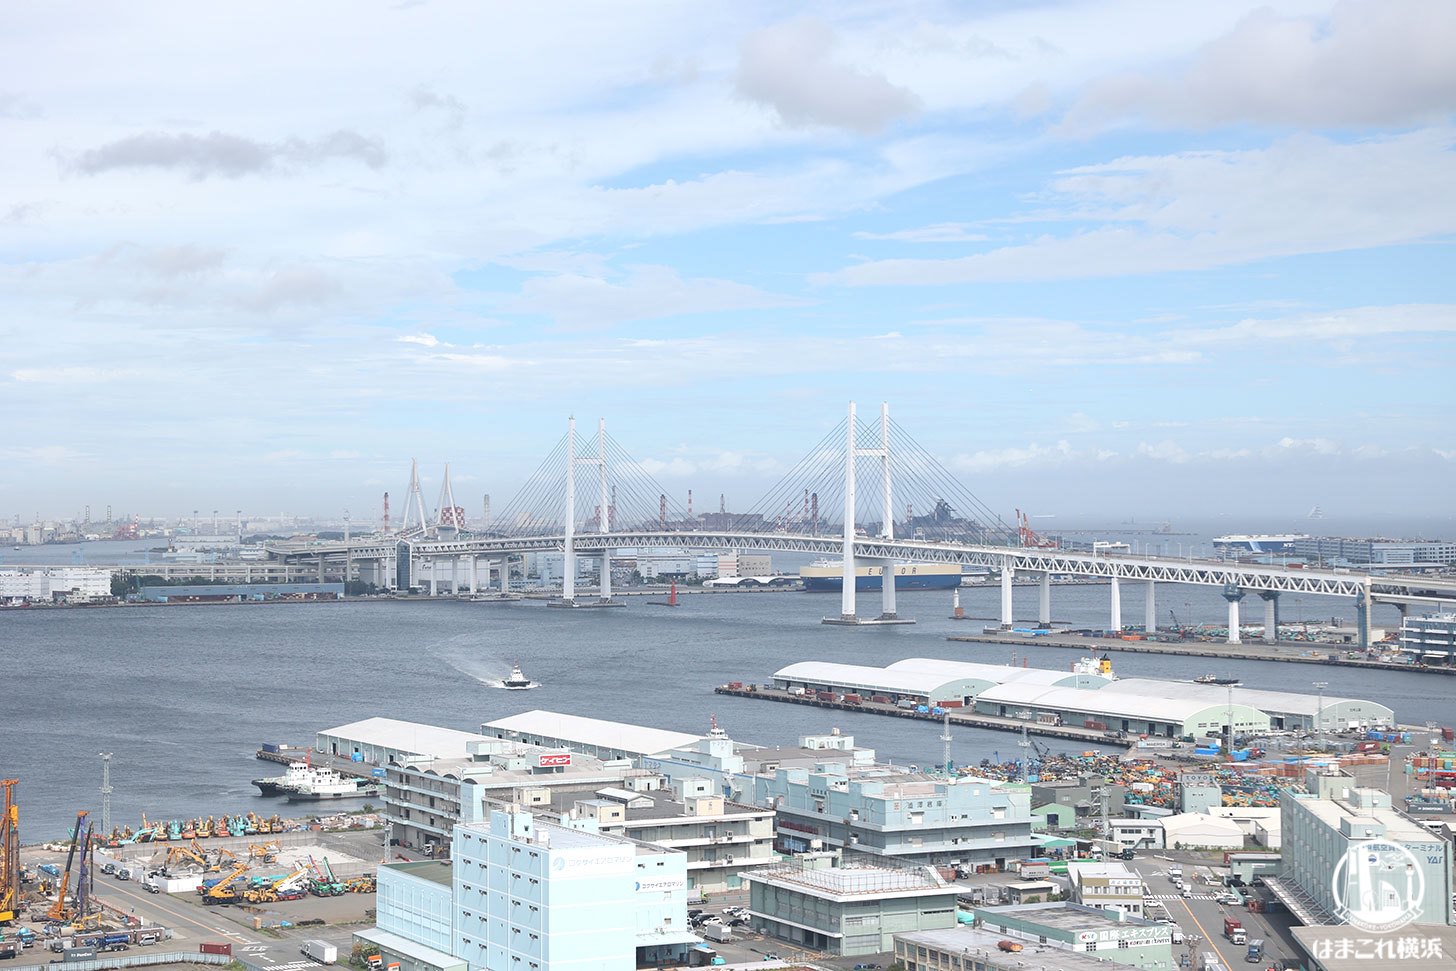 横浜マリンタワー 展望フロアから見た横浜ベイブリッジ